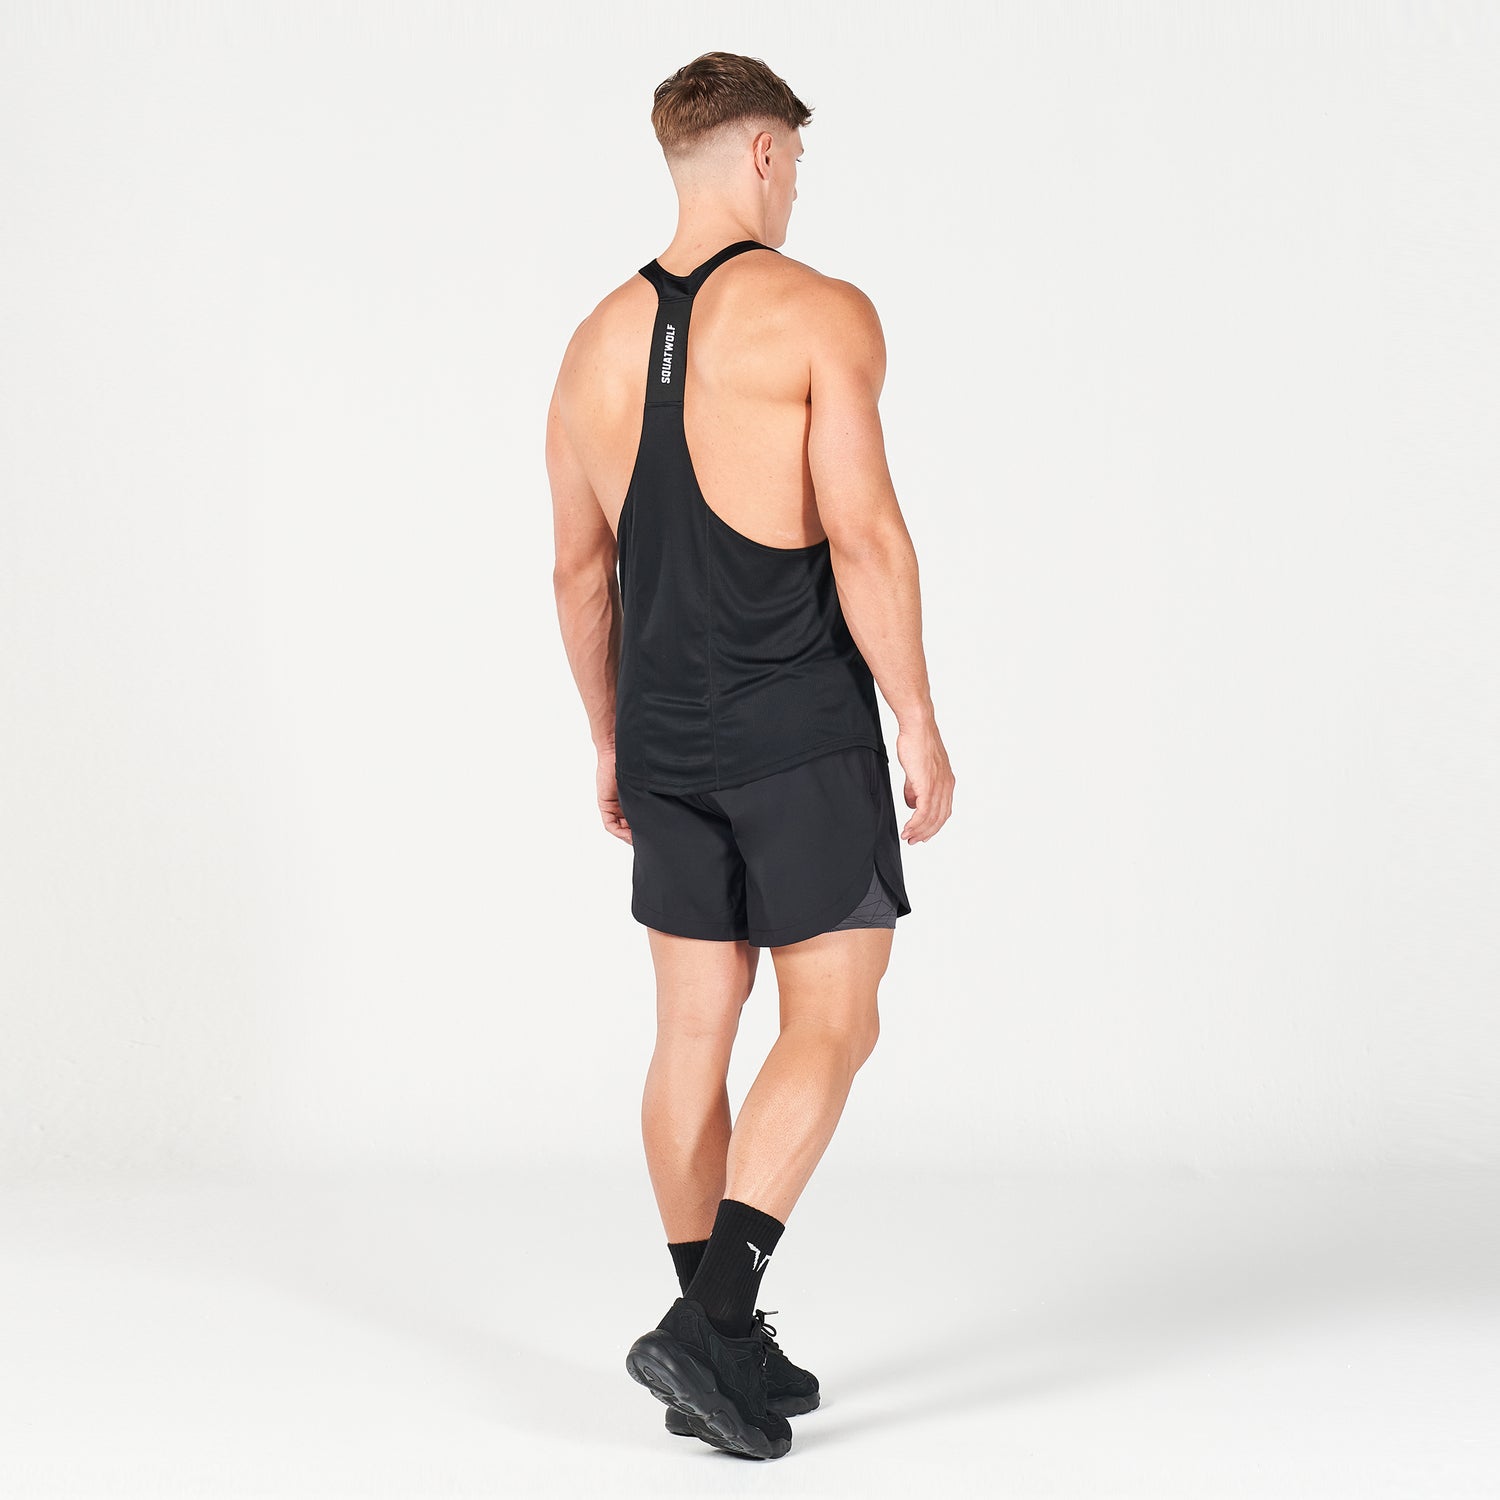 squatwolf-gym-wear-next-gen-hypercool-stringer-black-stringer-vests-for-men